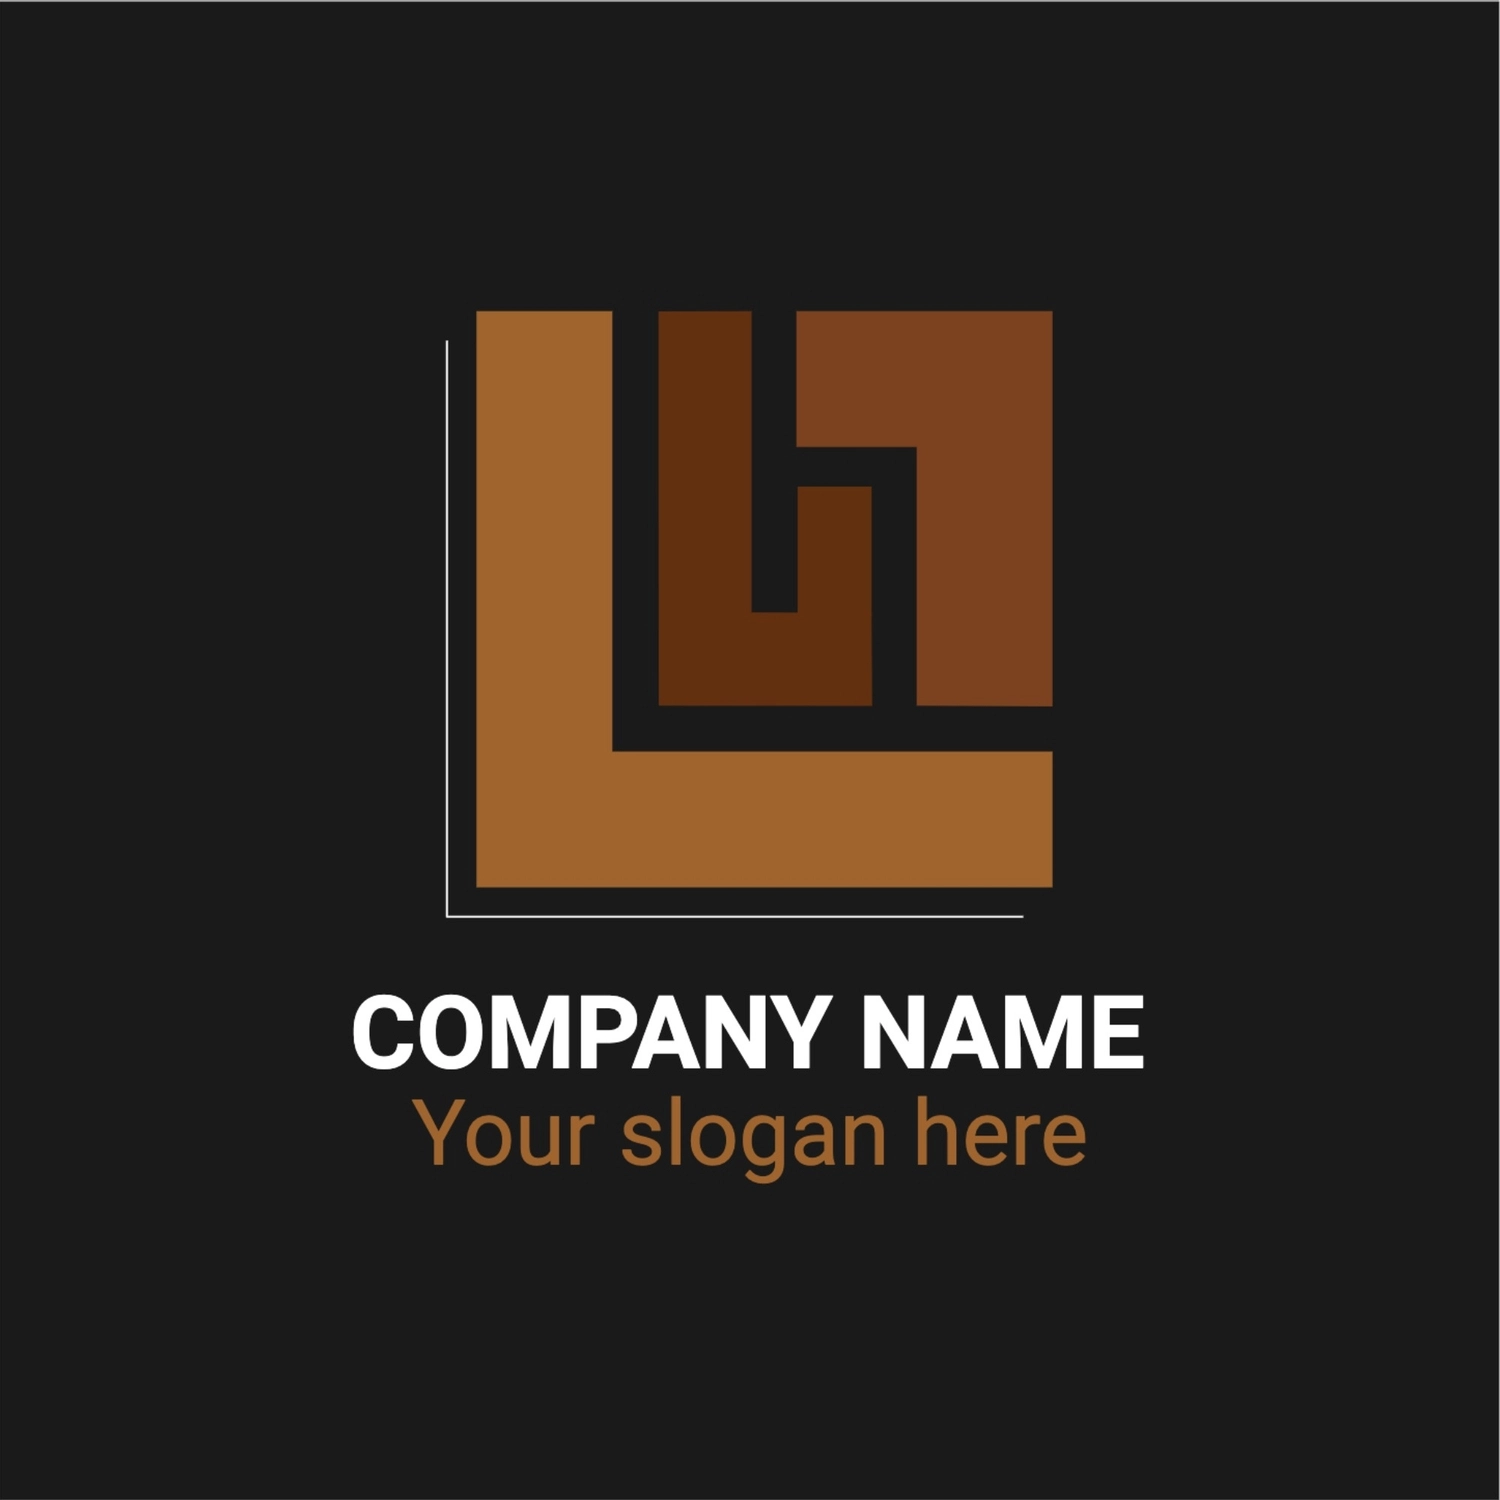 茶色の積み木のようなロゴ, Cây rơm, tạo ra, thiết kế, Logo mẫu